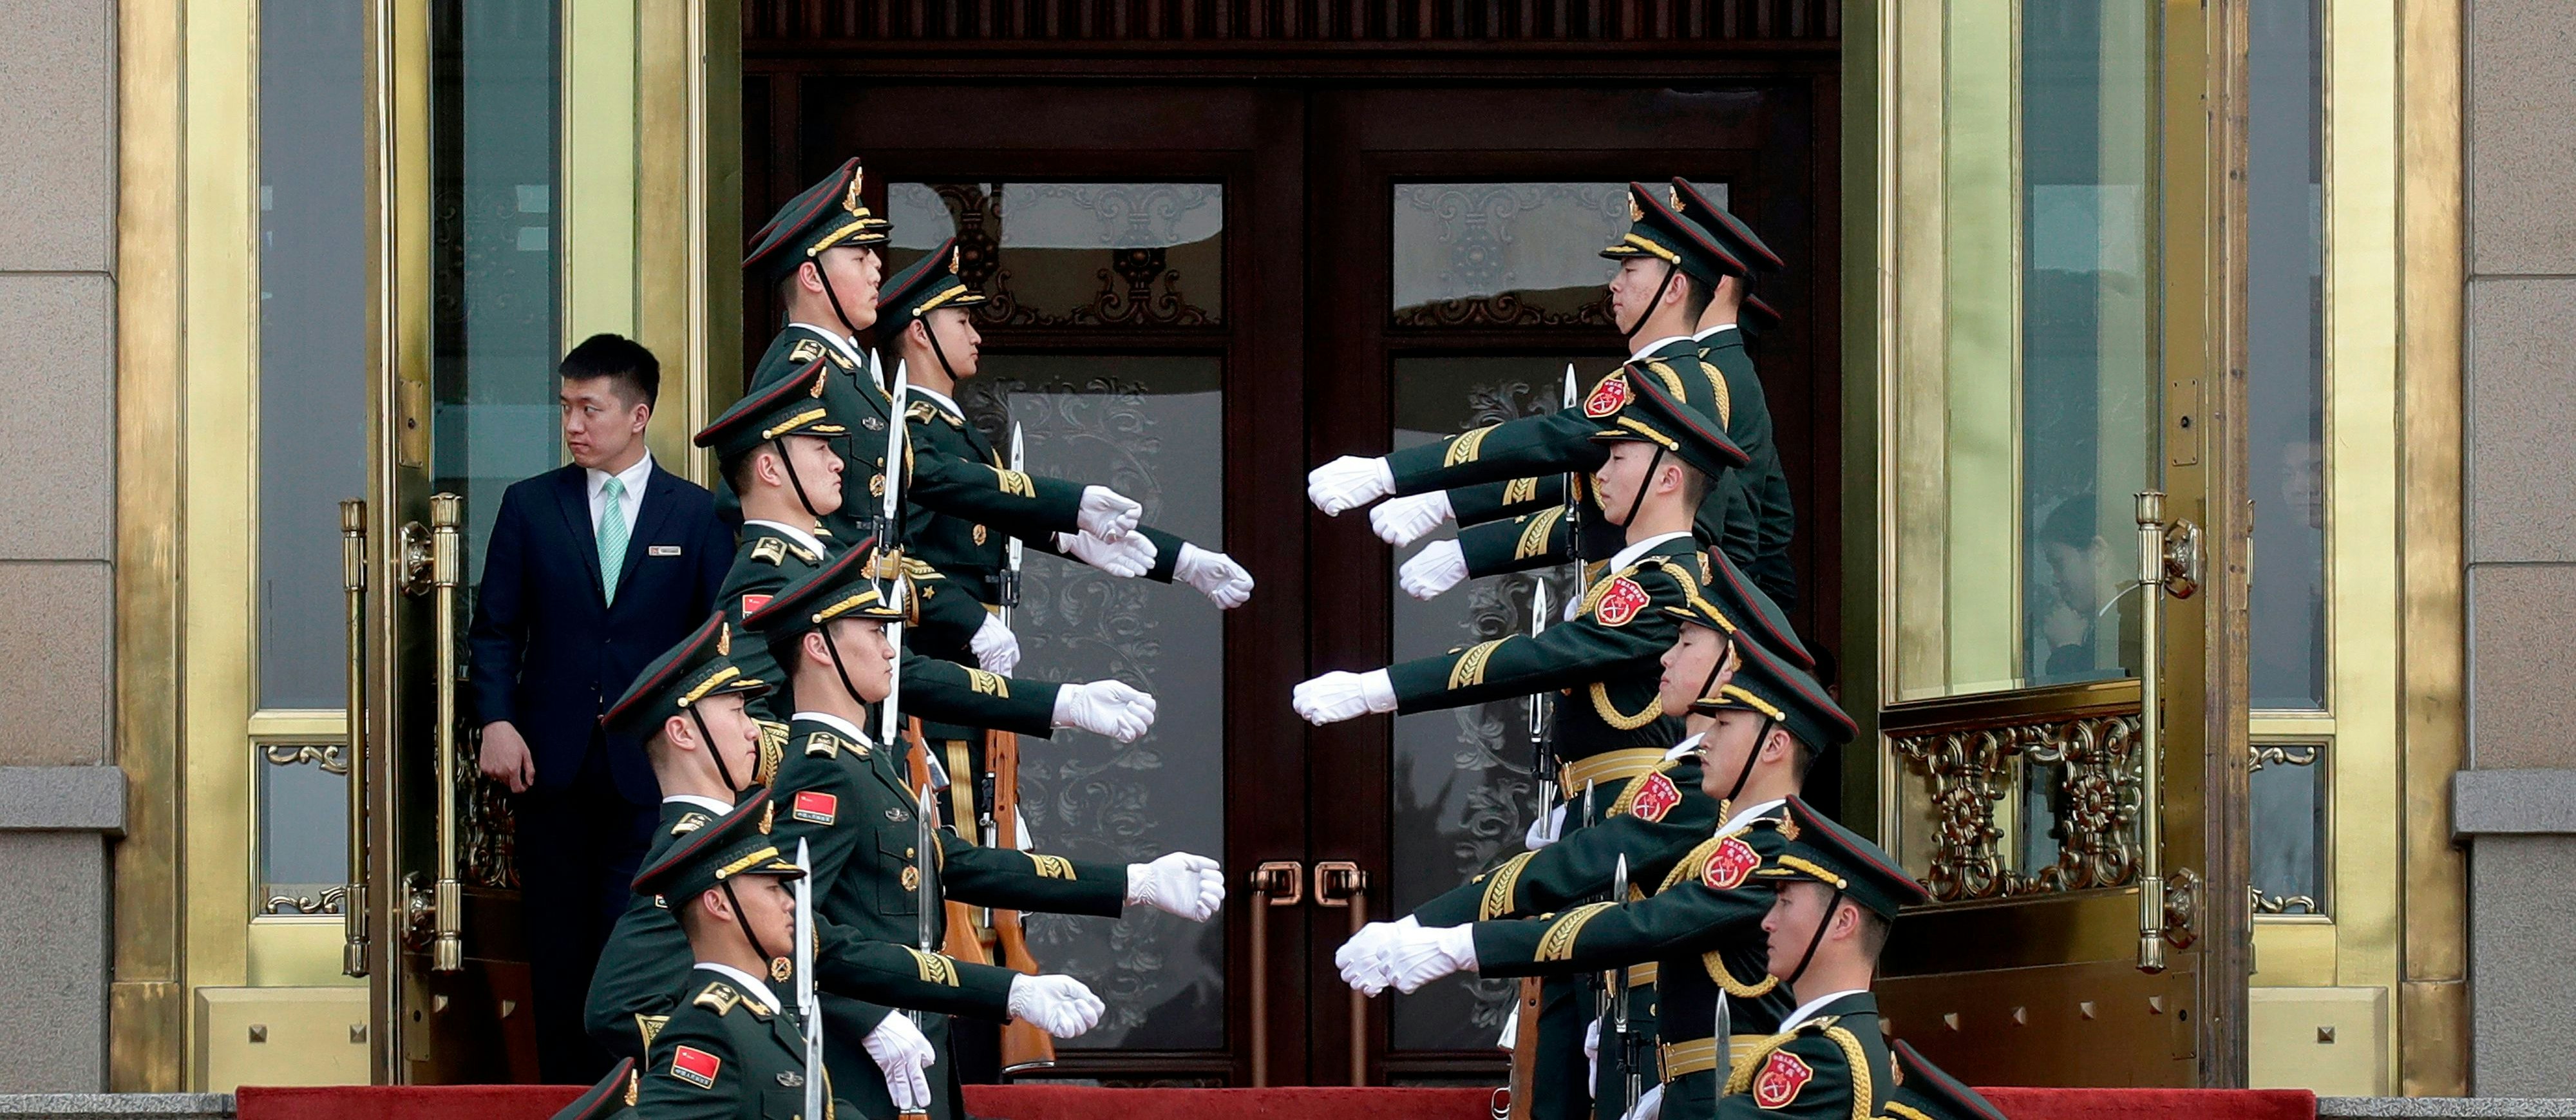 Ehrengarde am Eingang zur Großen Halle des Volkes in Peking, 8. April 2018